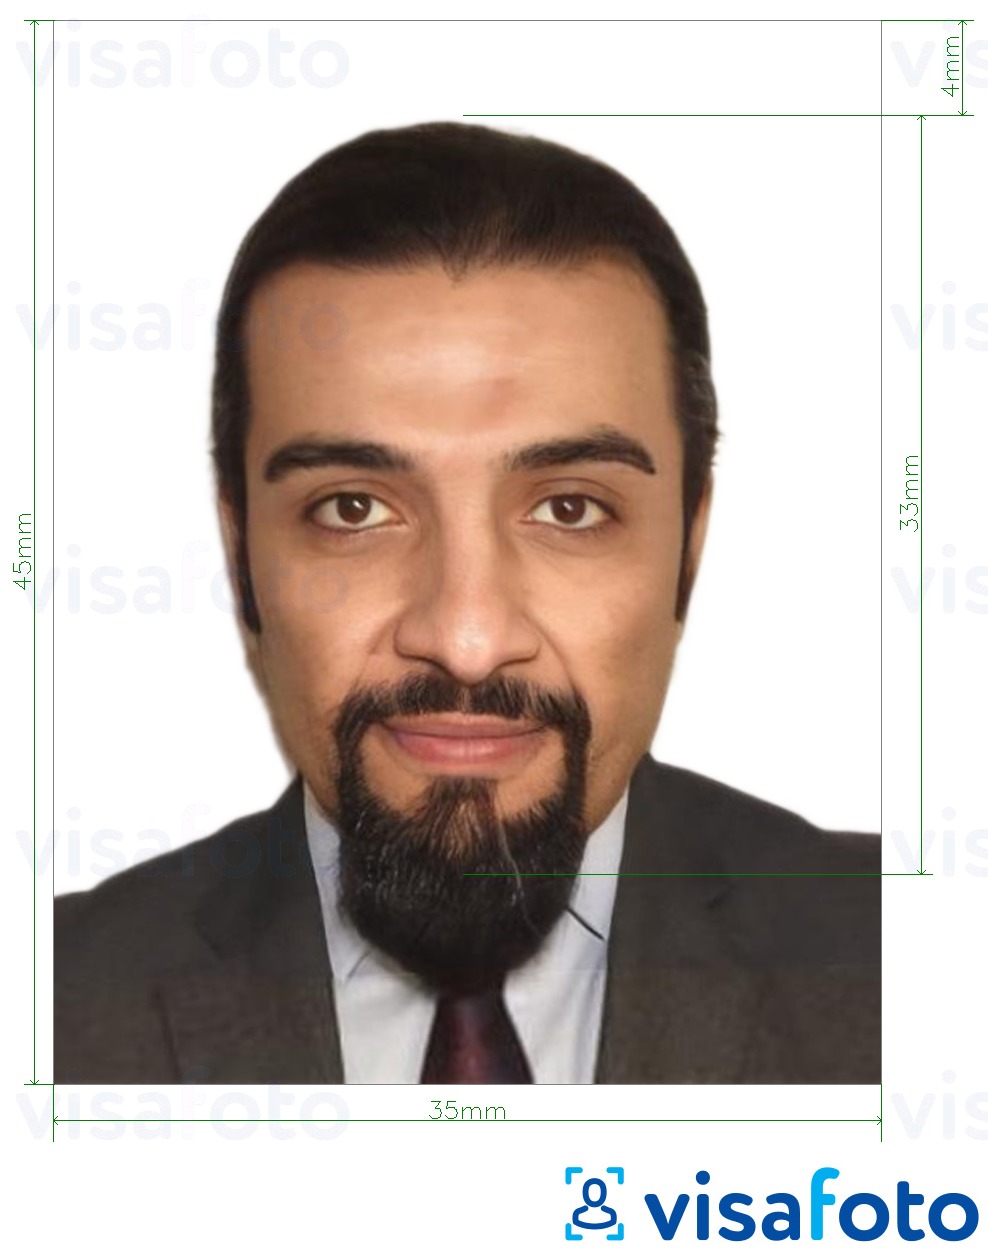 نمونه ی یک عکس برای پاسپورت اردن 3.5x4.5 سانتی متر (35x45 می��ی متر) با مشخصات دقیق